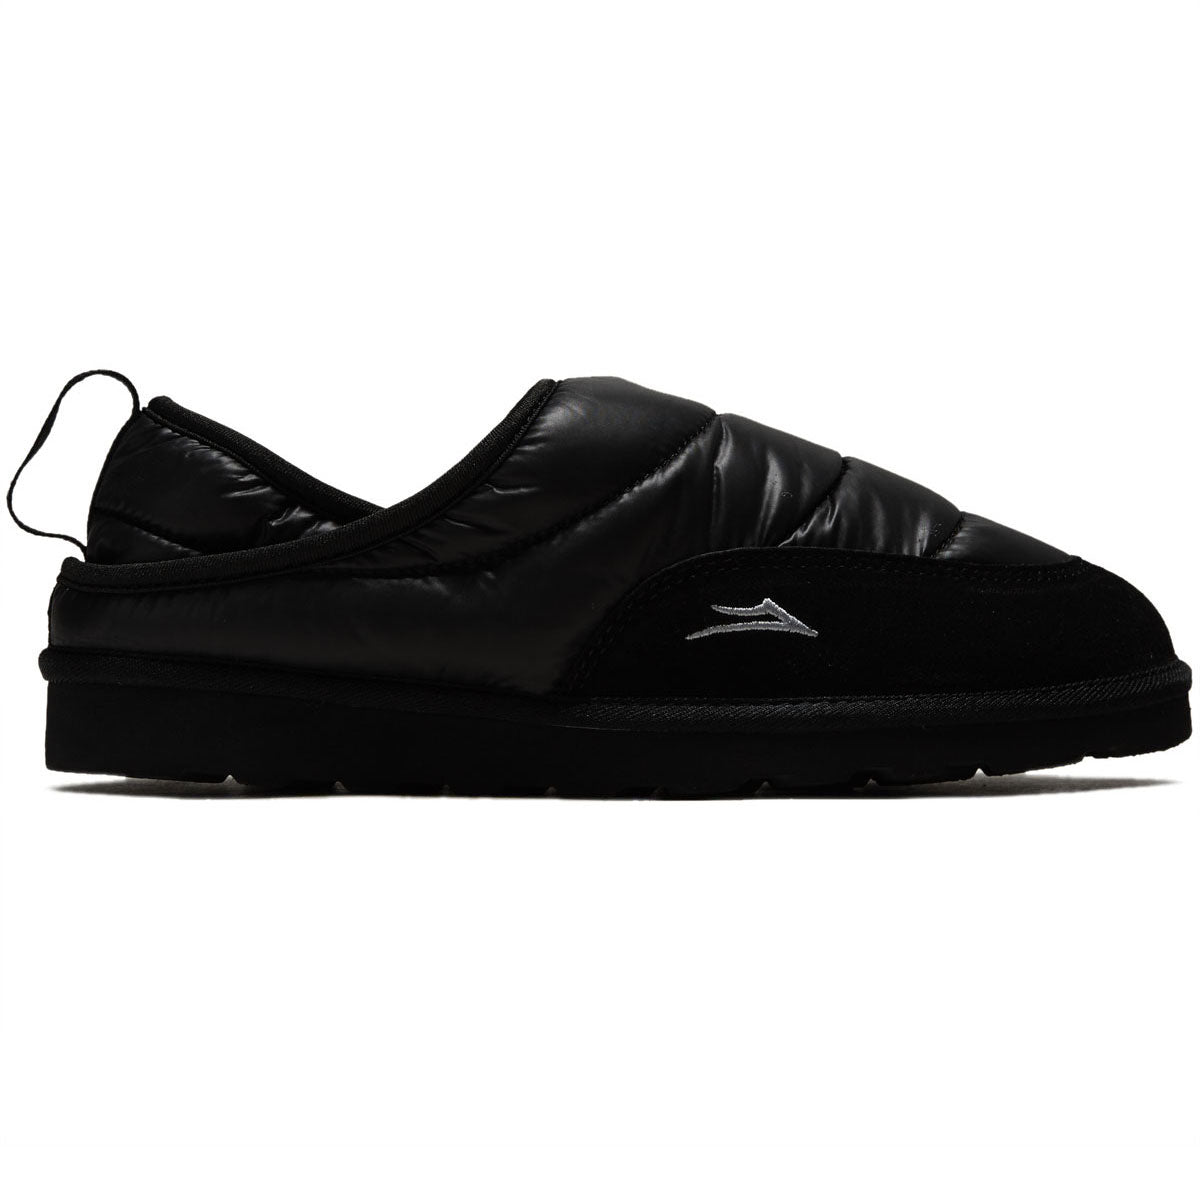 Lakai Owen Slipper Shoes - Black Nylon image 1